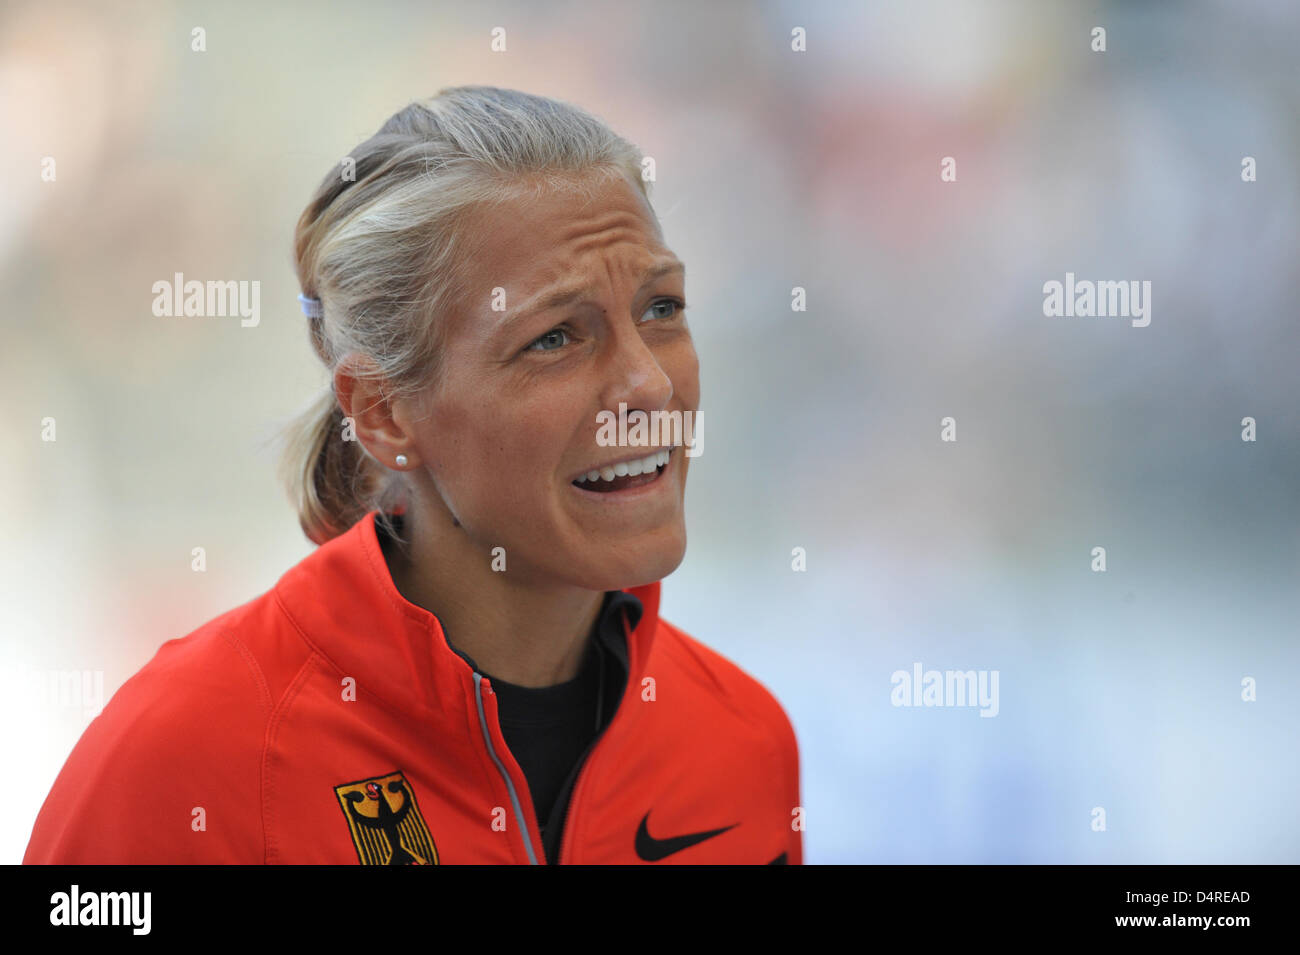 Alemania?s Jennifer Oeser grita durante el Heptathlon en el XII Campeonato del Mundo IAAF de Atletismo en Berlín, Alemania, el 15 de agosto de 2009. Foto: Bernd Thyssen Foto de stock